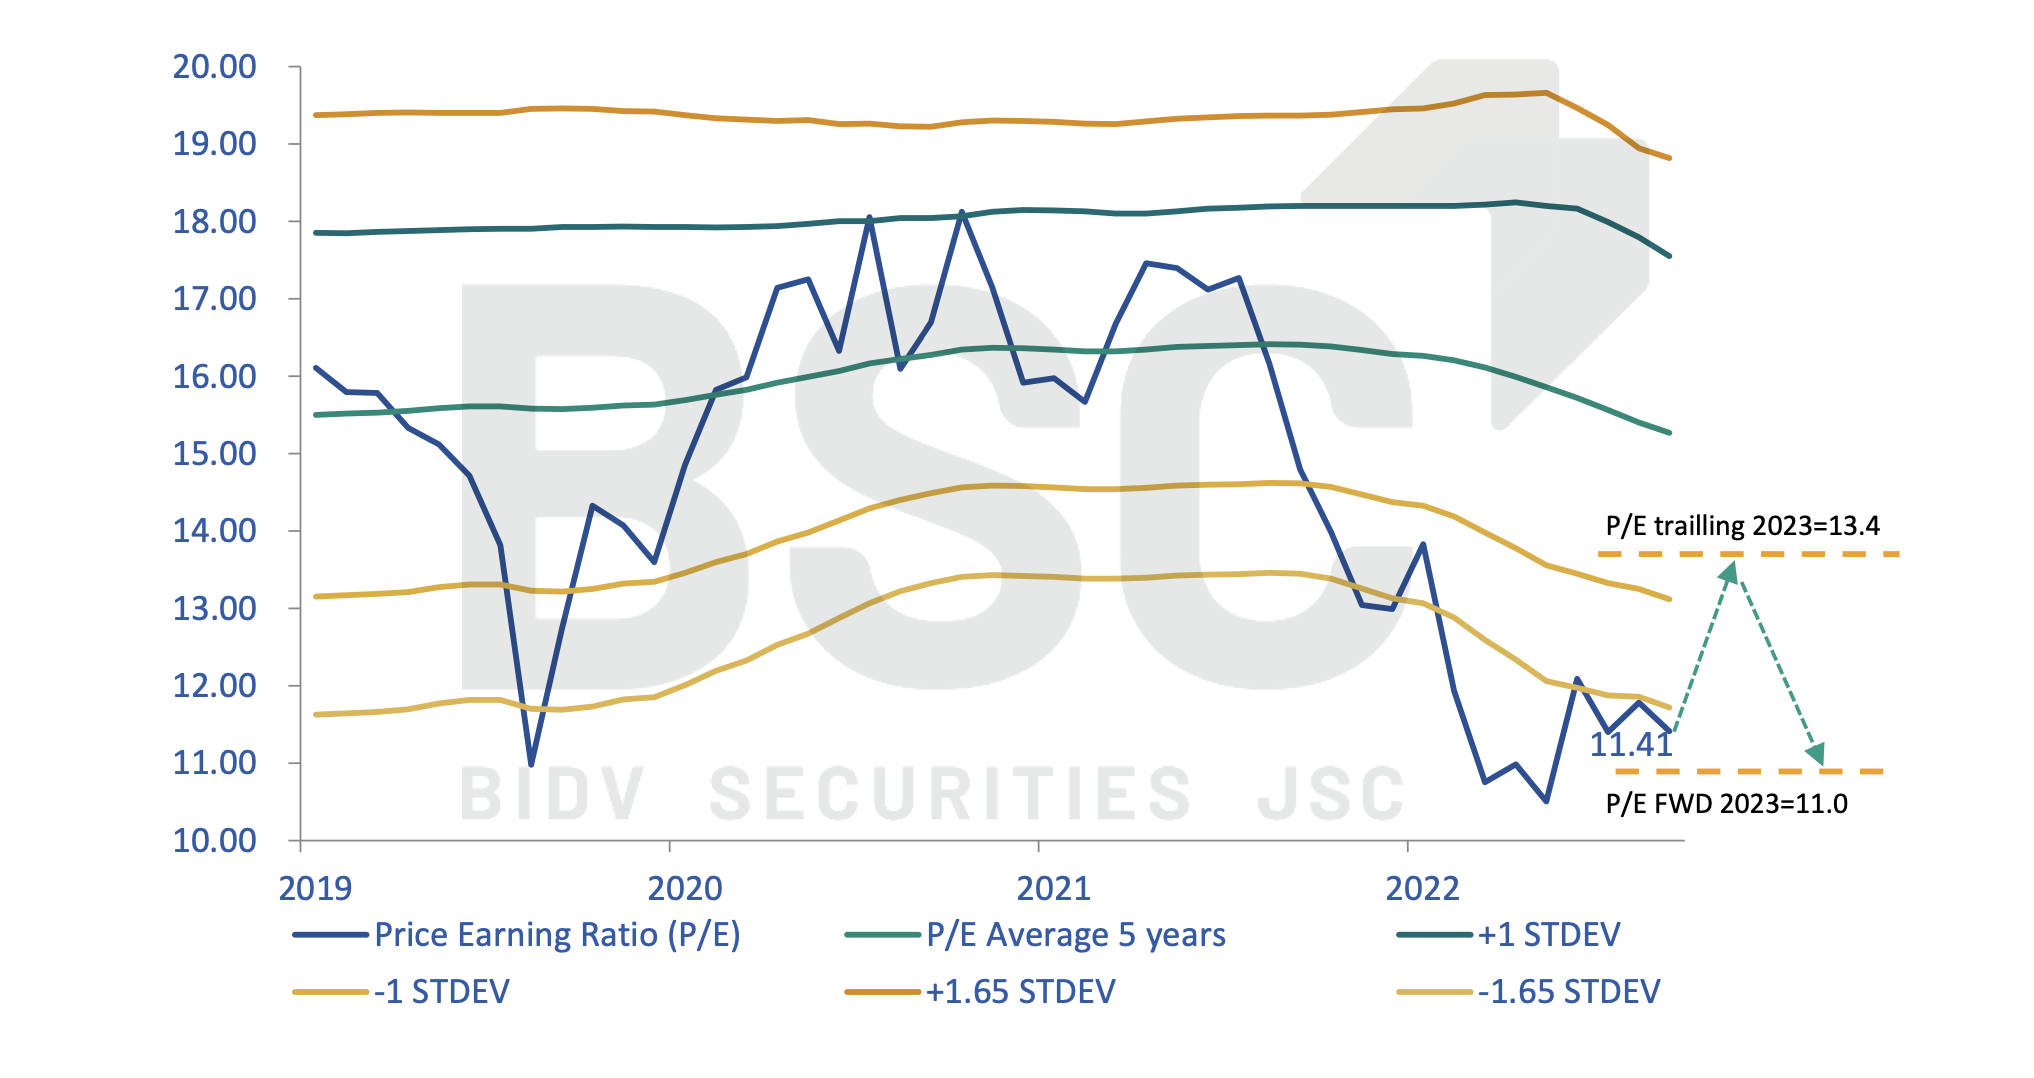 Định giá thị trường chứng khoán kém hấp dẫn hơn sau mùa báo cáo lợi nhuận quý I/2023. Ảnh: BSC